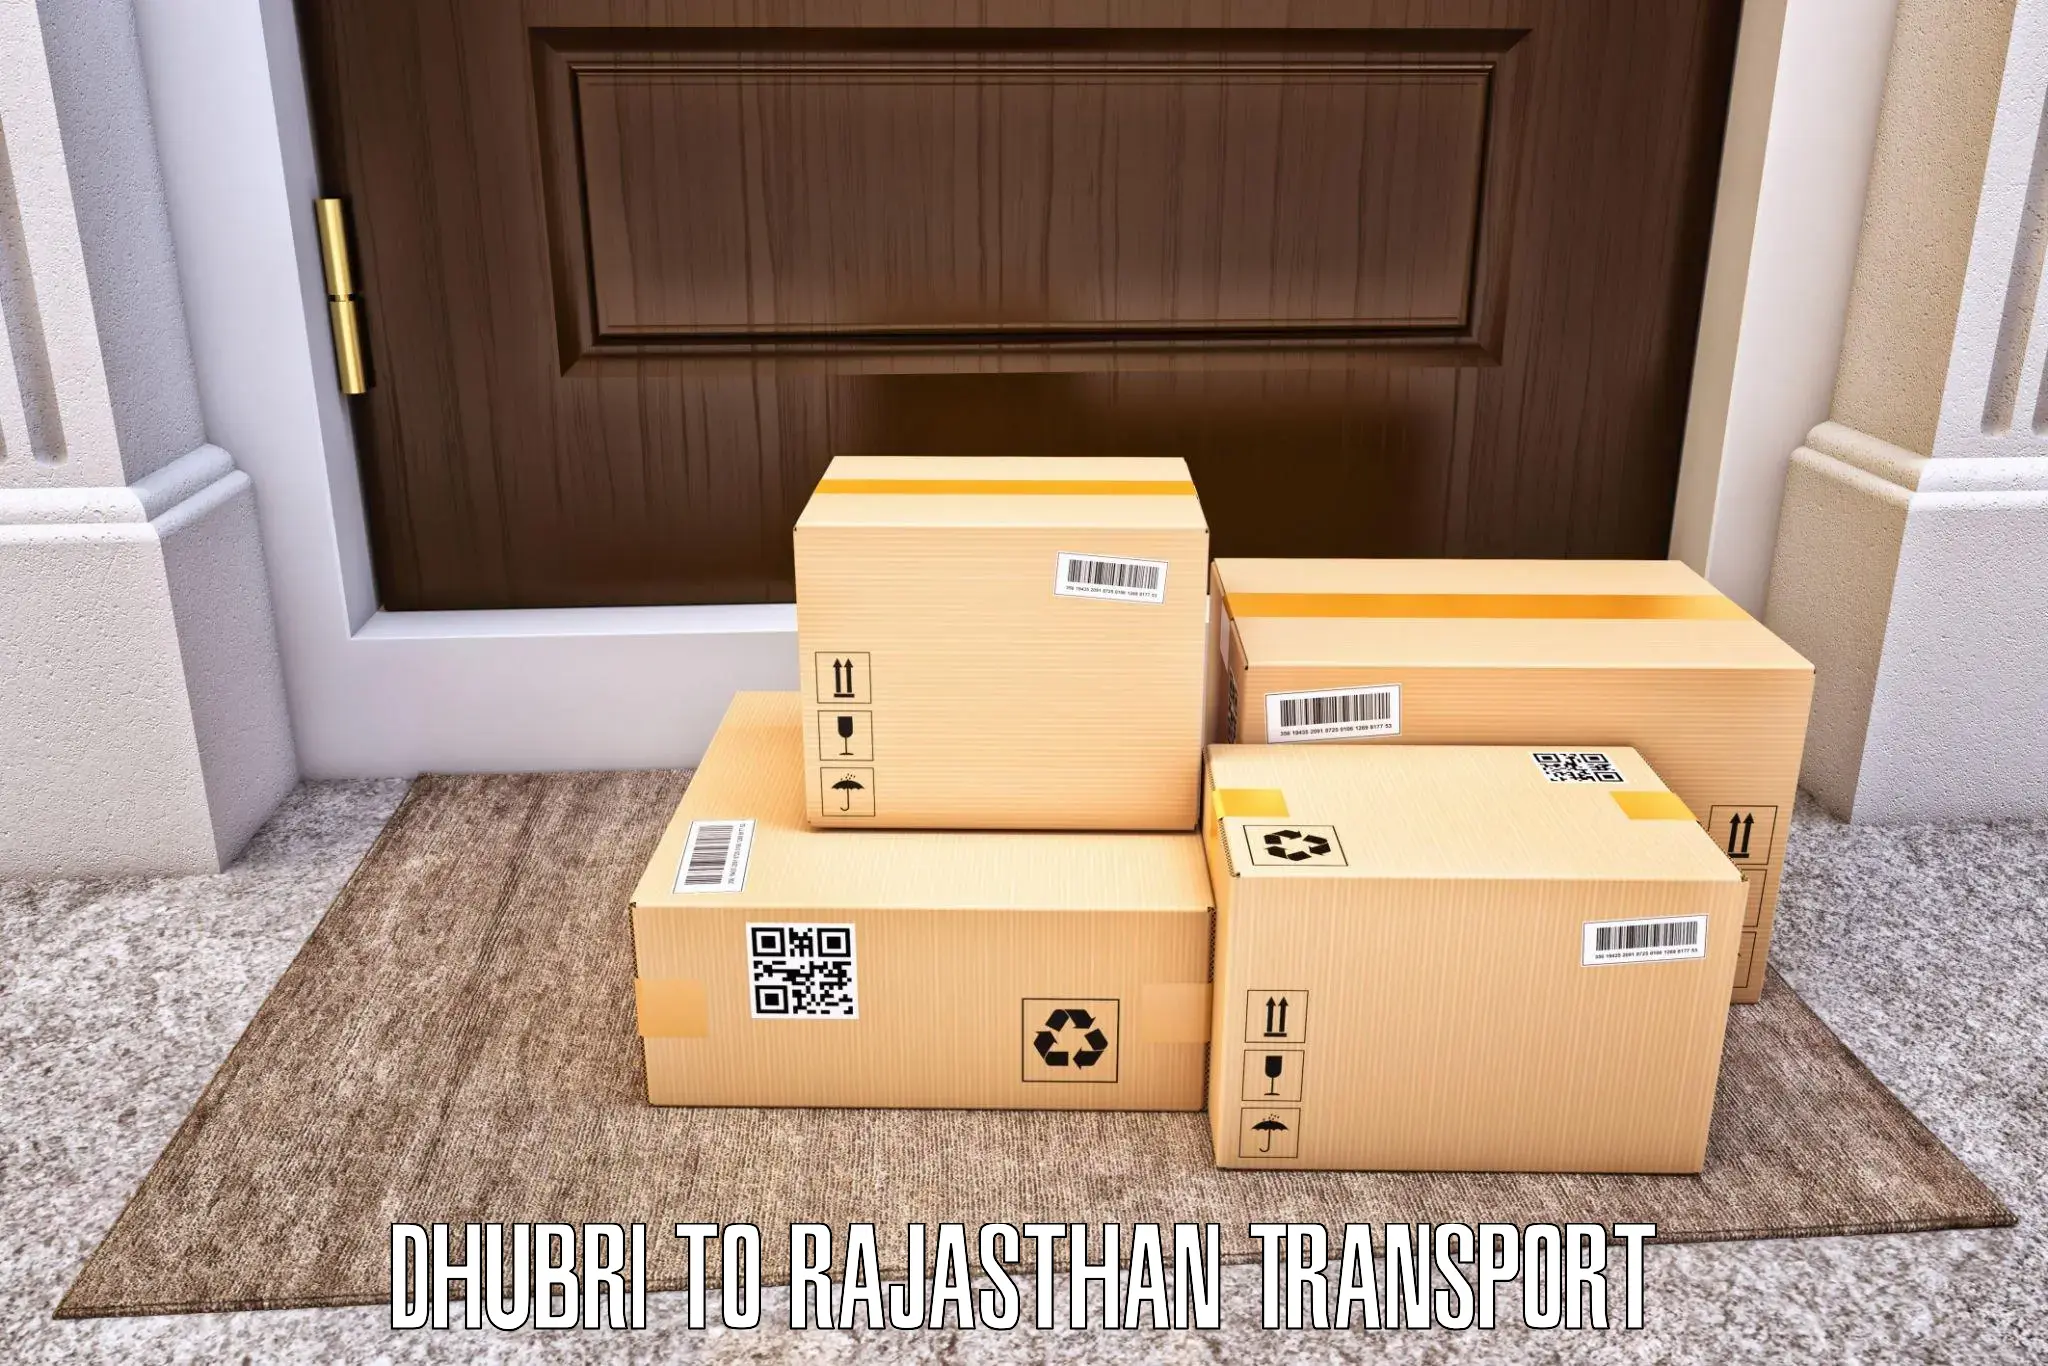 Air cargo transport services Dhubri to Bari Sadri